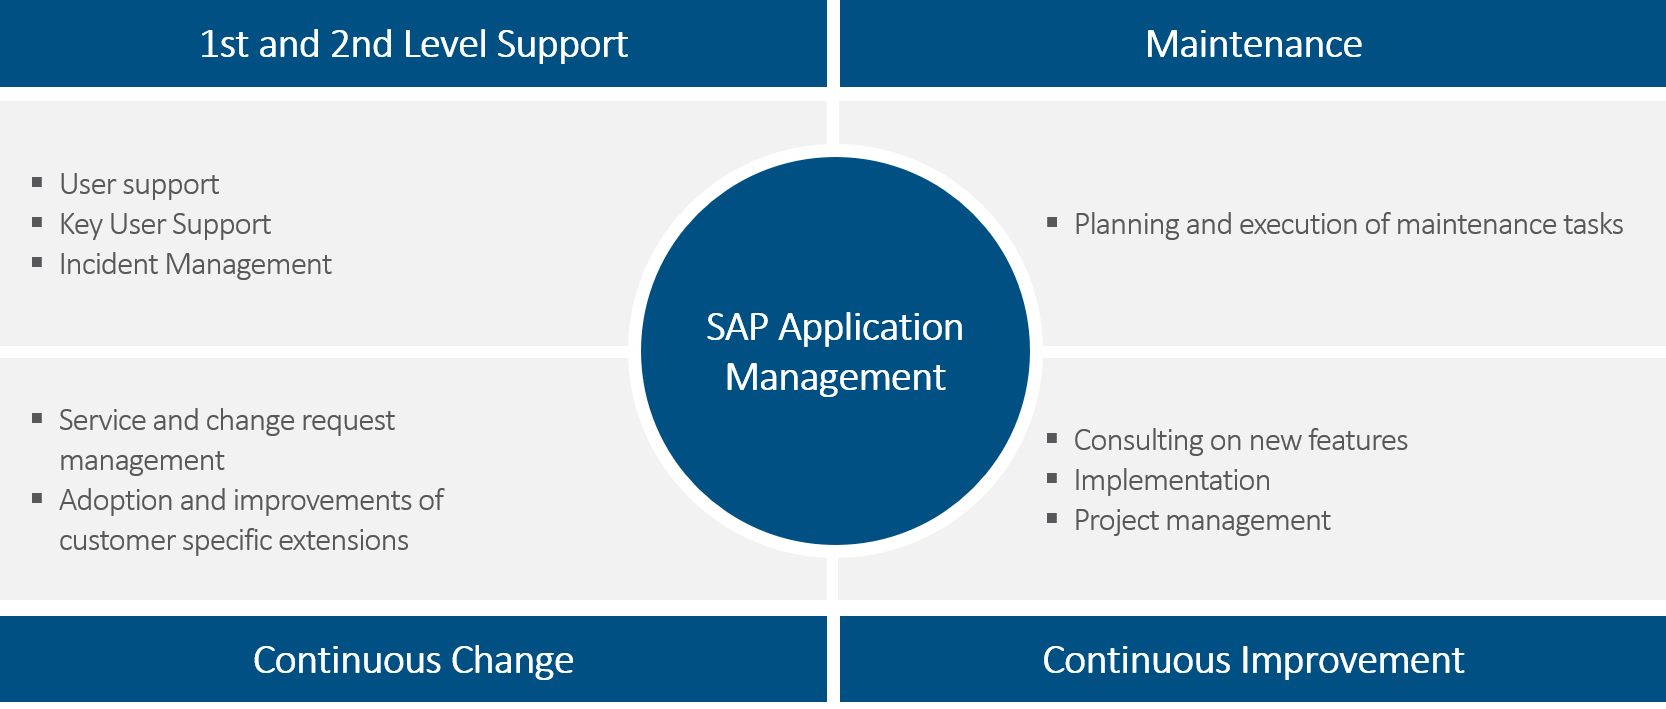 SAP application management